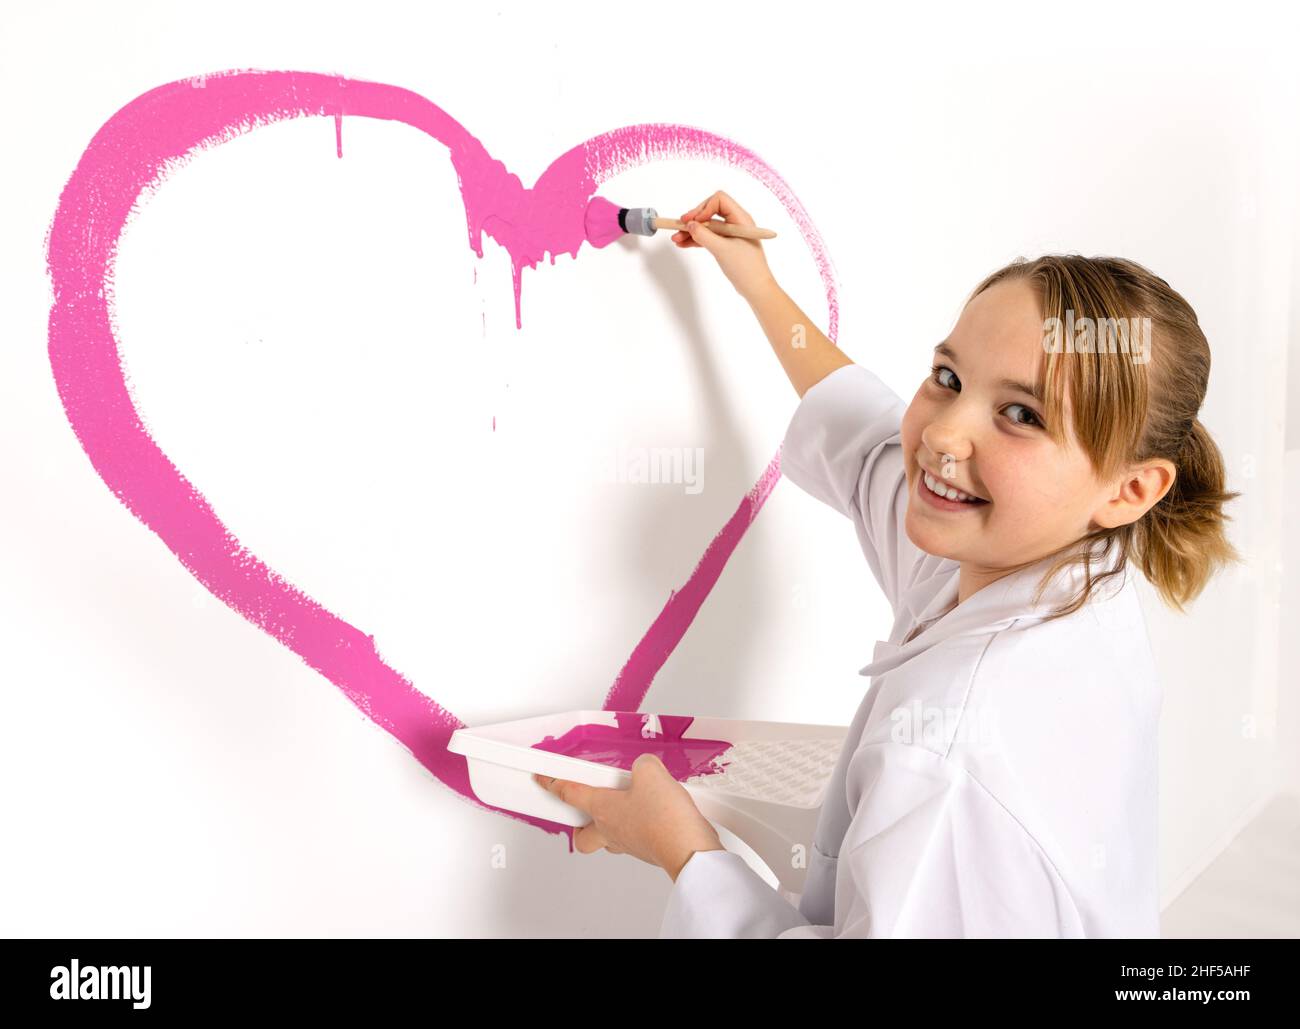 Niña de 10 años pintando un corazón rosa con un cepillo en la pared. La chica está mirando a la cámara con una sonrisa feliz. Foto de stock